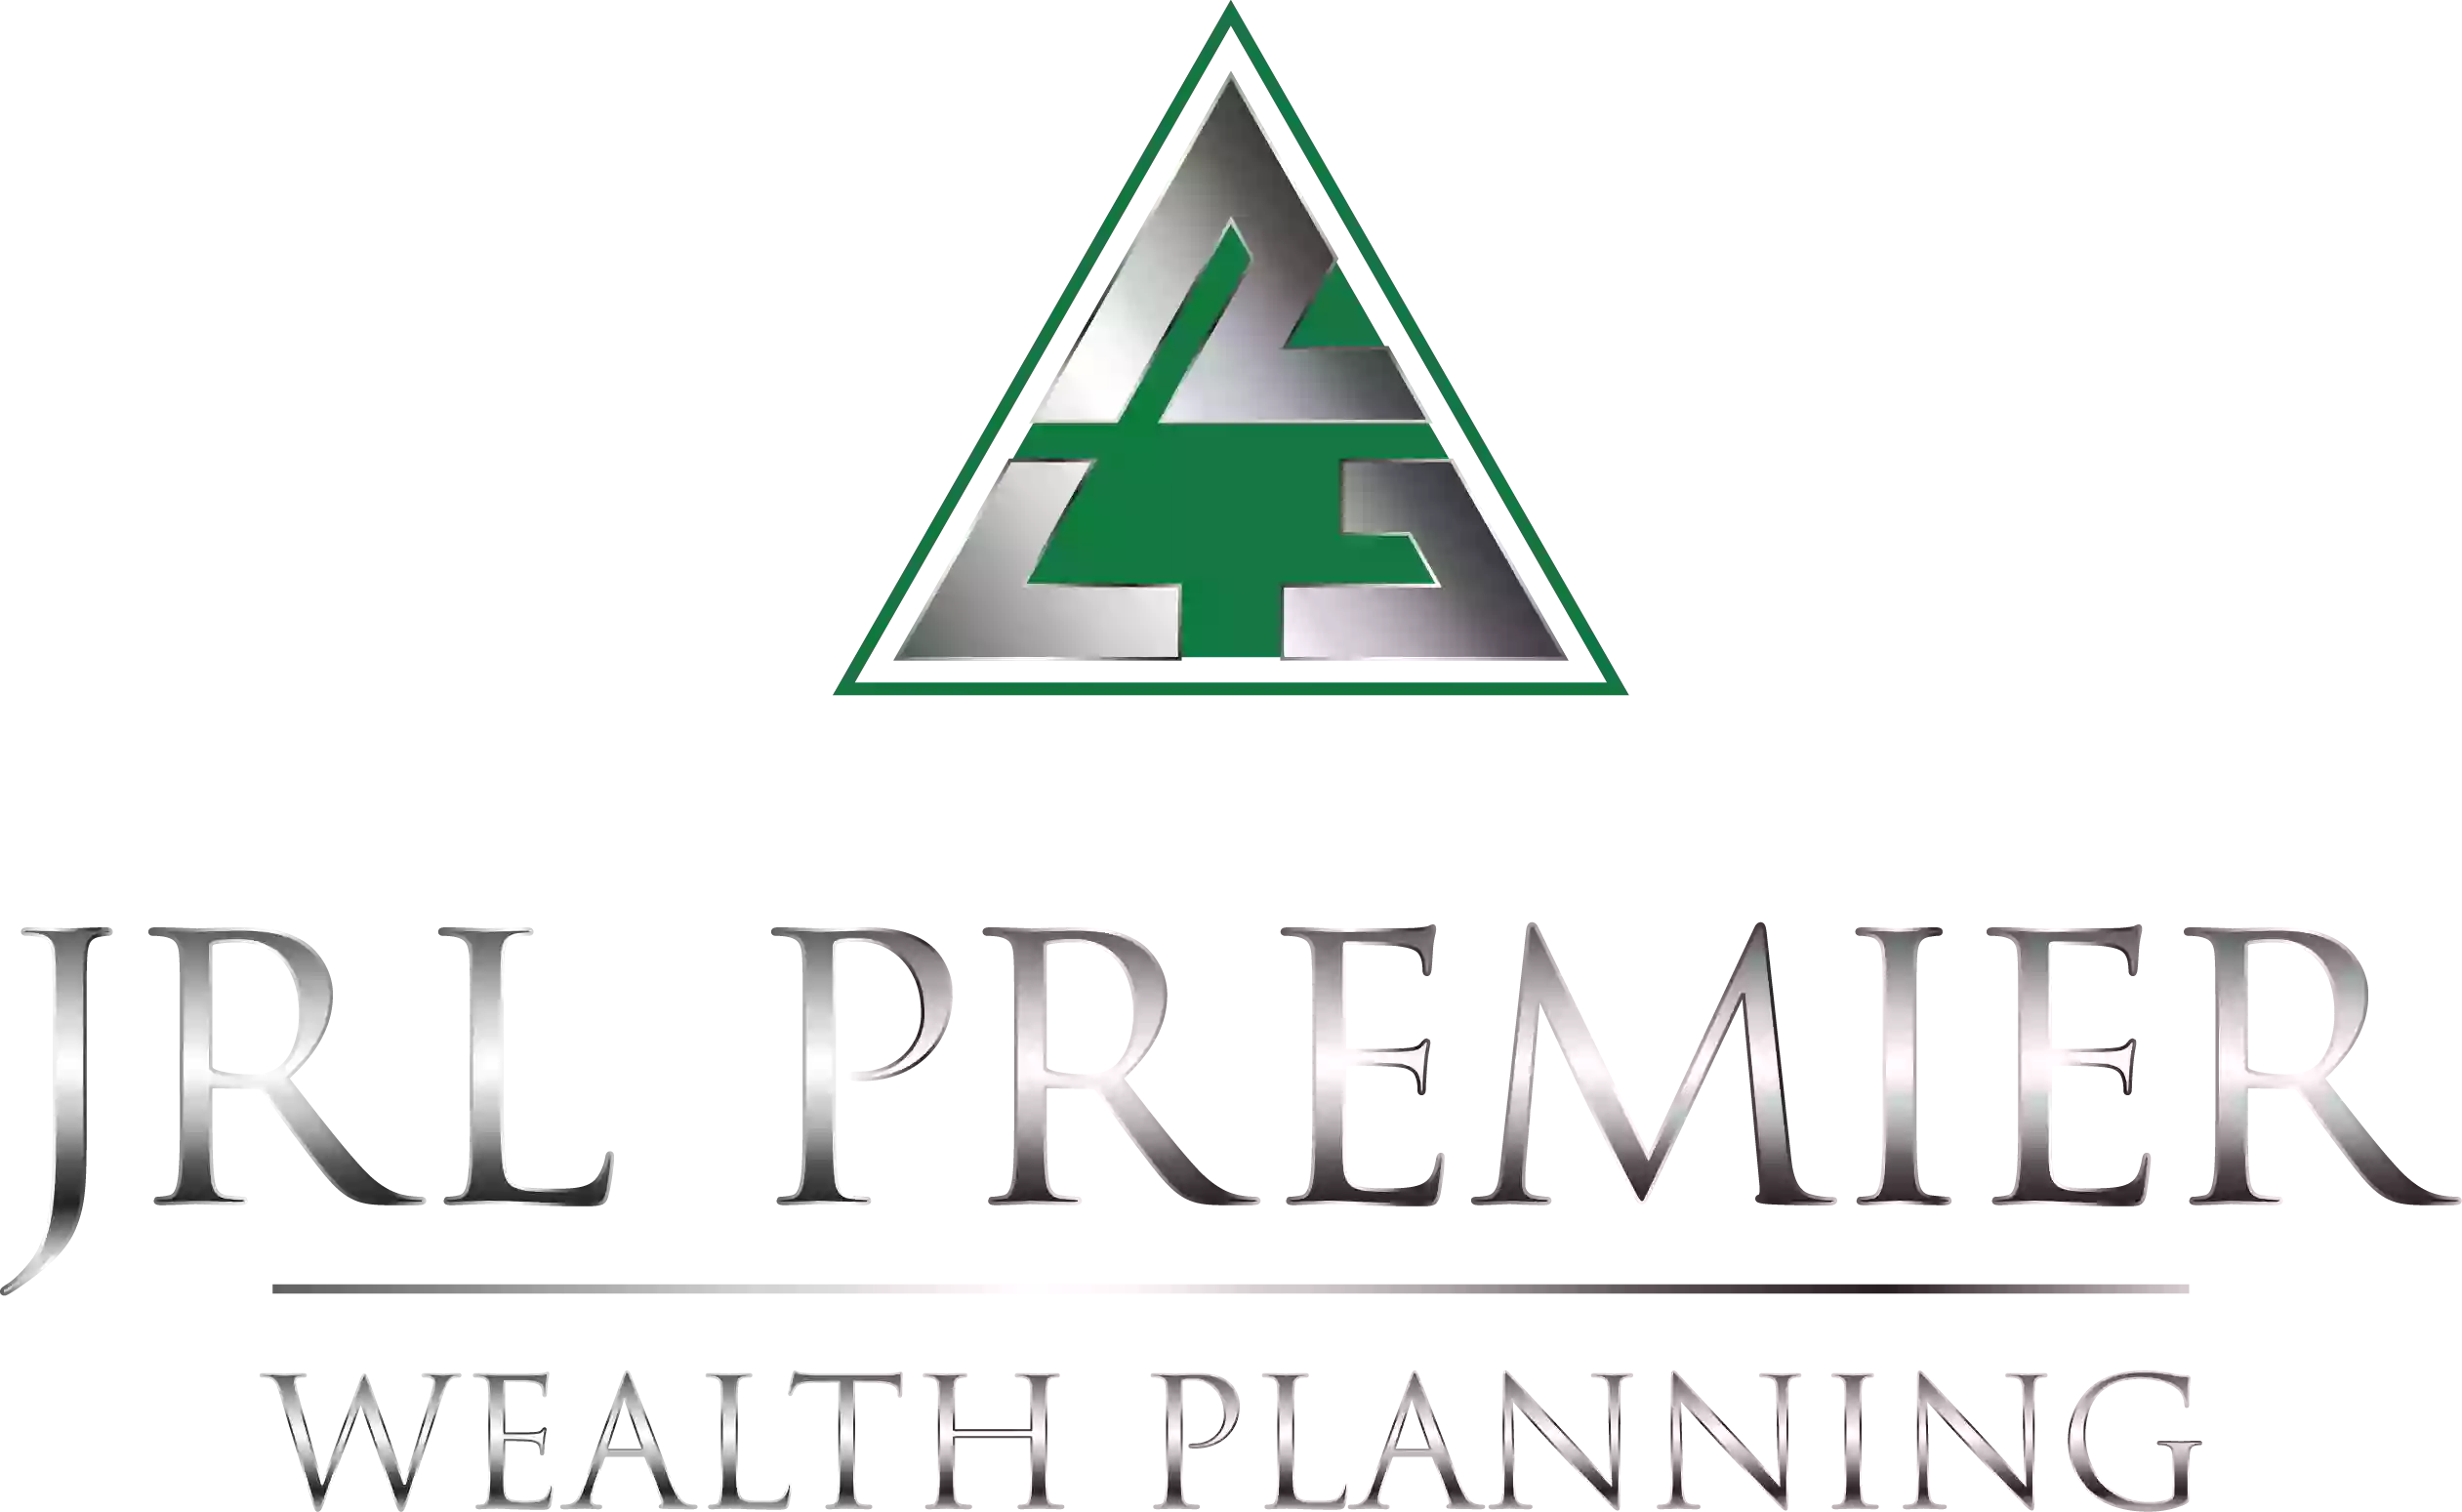 JRL Premier Wealth Planning